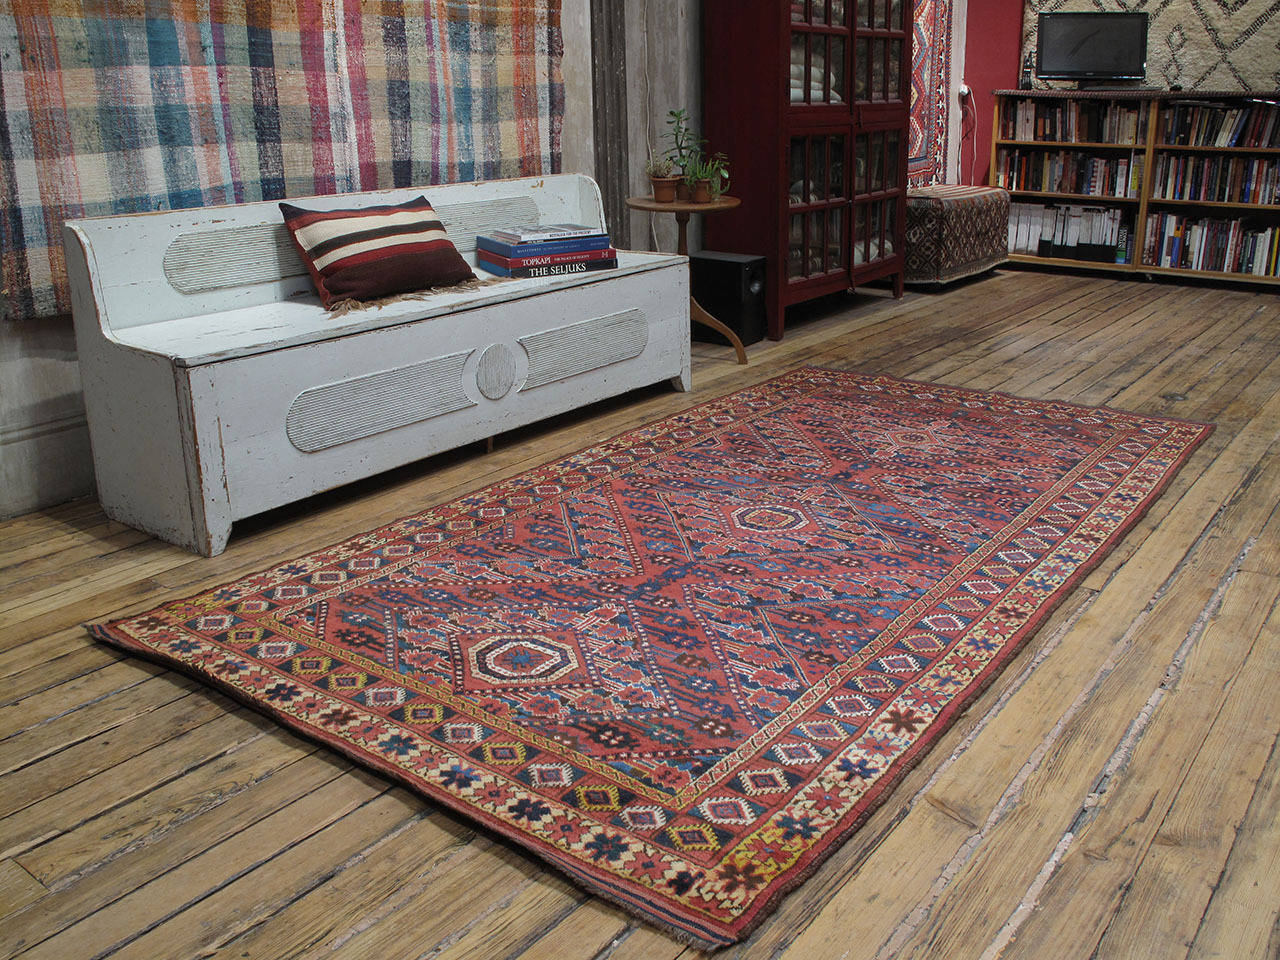 Antiker Beshir-Turkmen-Teppich. Ein sehr begehrter antiker Teppich, der den turkmenischen Stämmen der Ersari in Zentralasien zugeschrieben wird, in einem verschnörkelten Stil, der oft als 